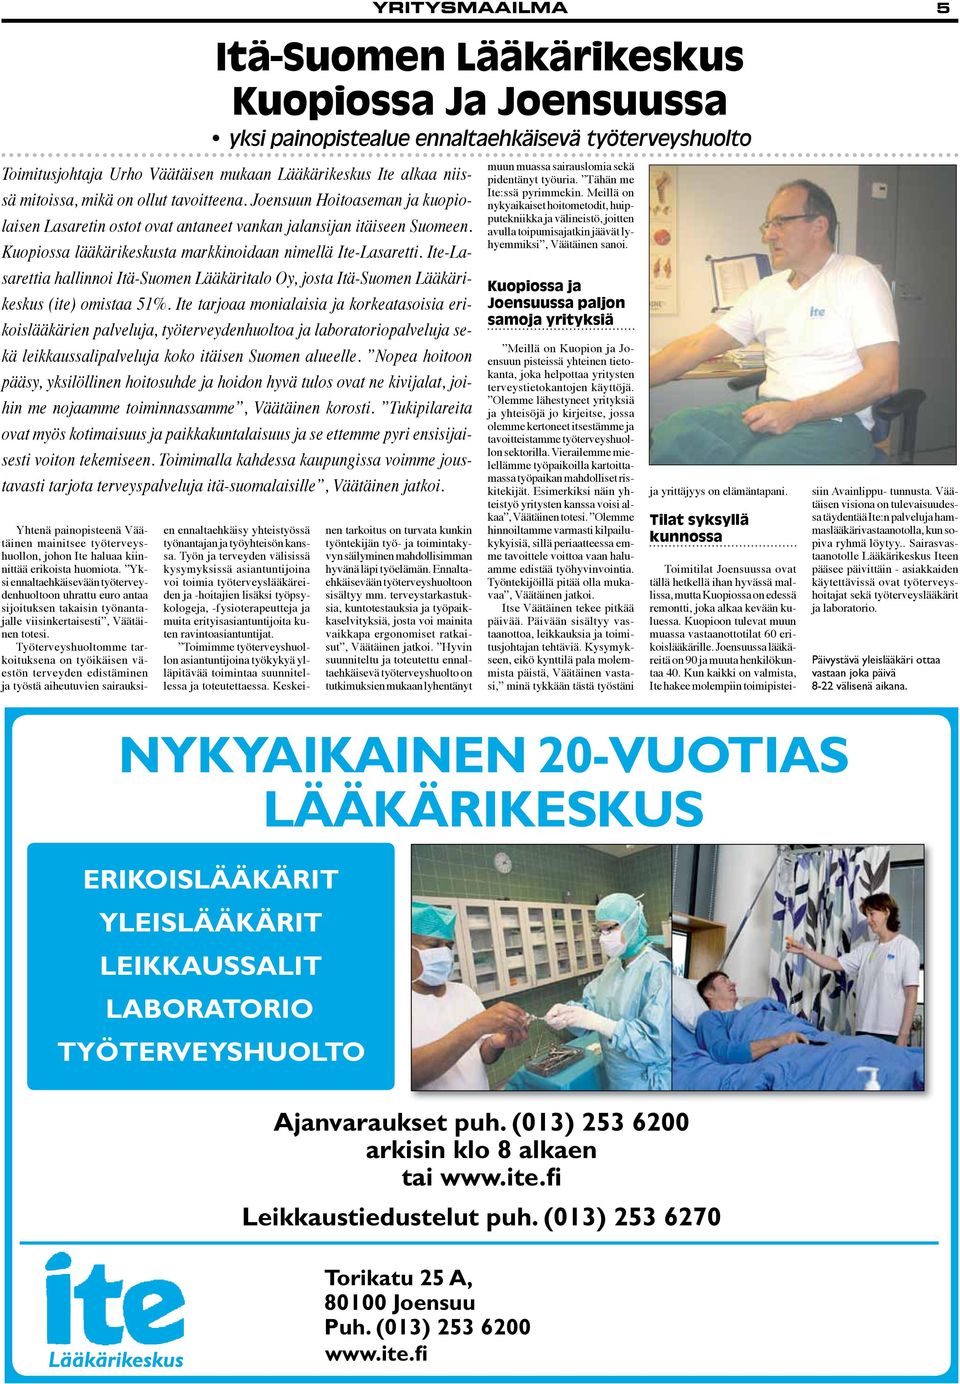 Ite-Lasarettia hallinnoi Itä-Suomen Lääkäritalo Oy, josta Itä-Suomen Lääkärikeskus (ite) omistaa 51%.